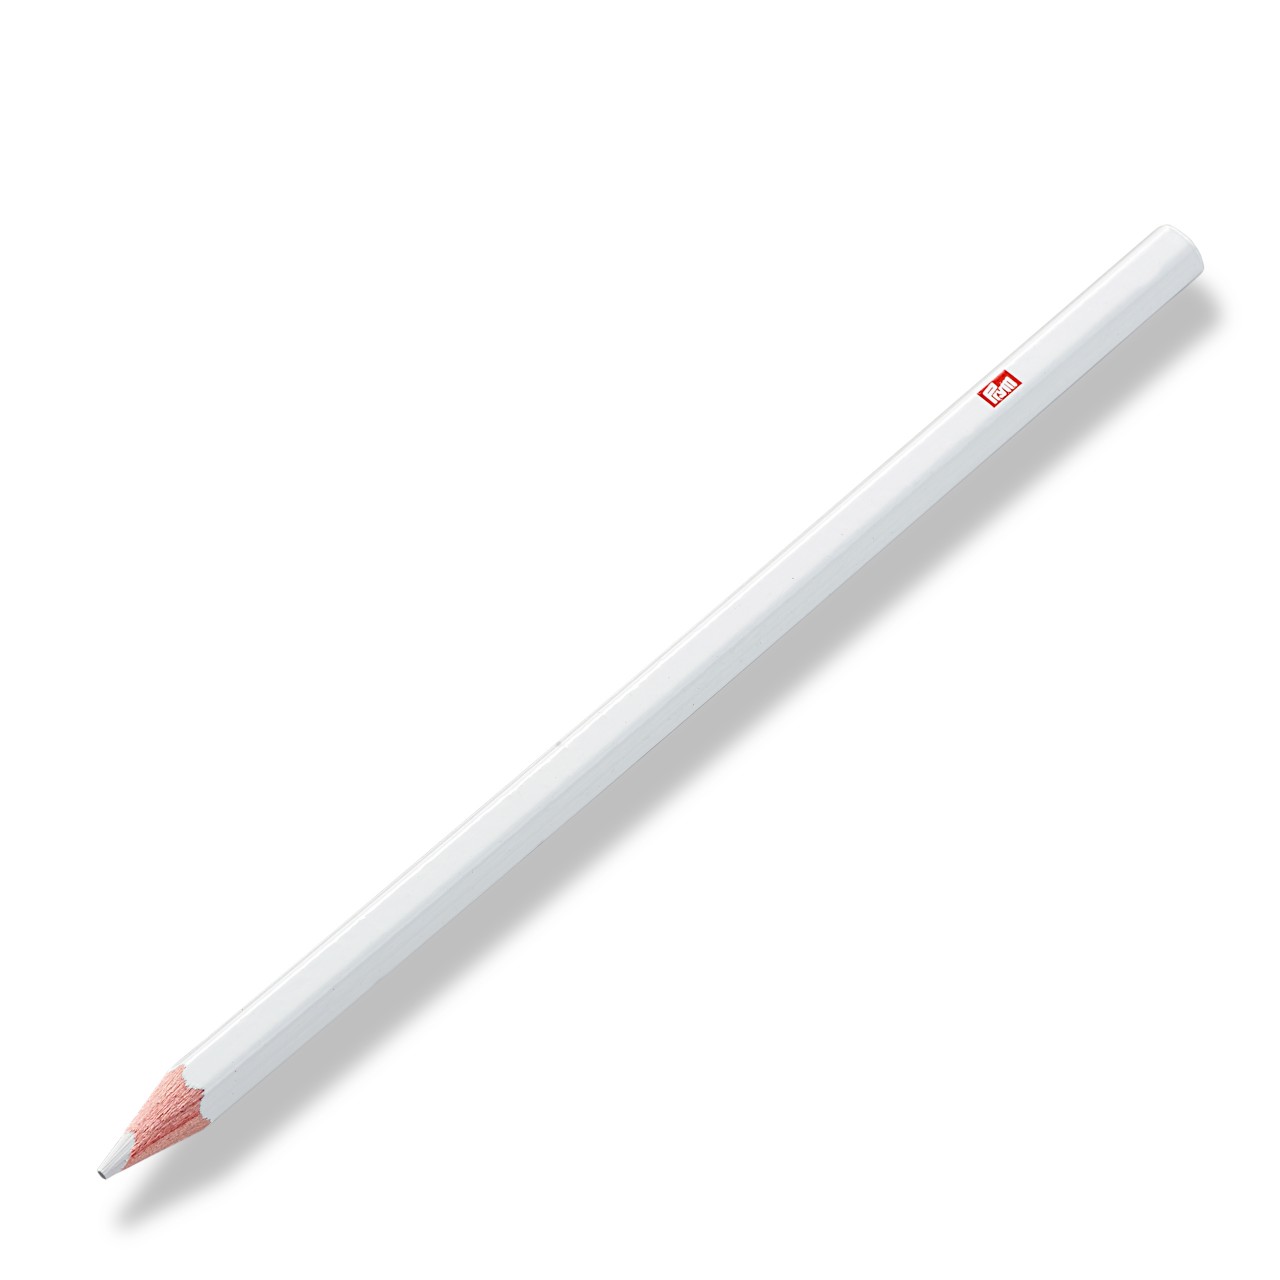 Маркировочный серебристый карандаш 611606 Prym (следы удаляются водой)